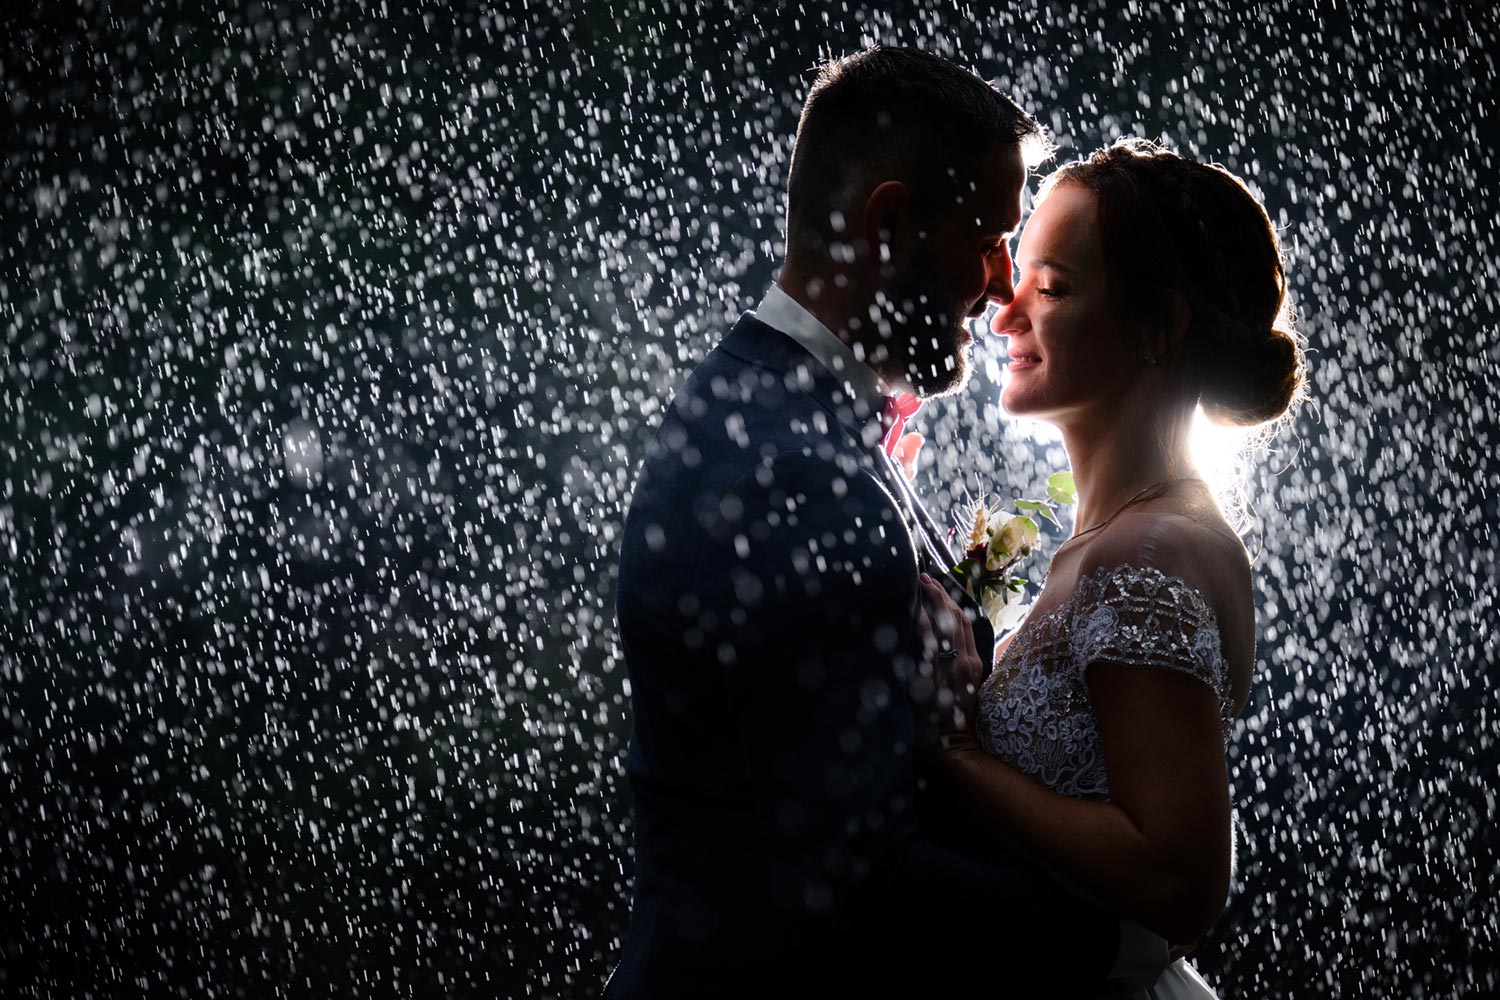 Prague wedding photography on rainy day